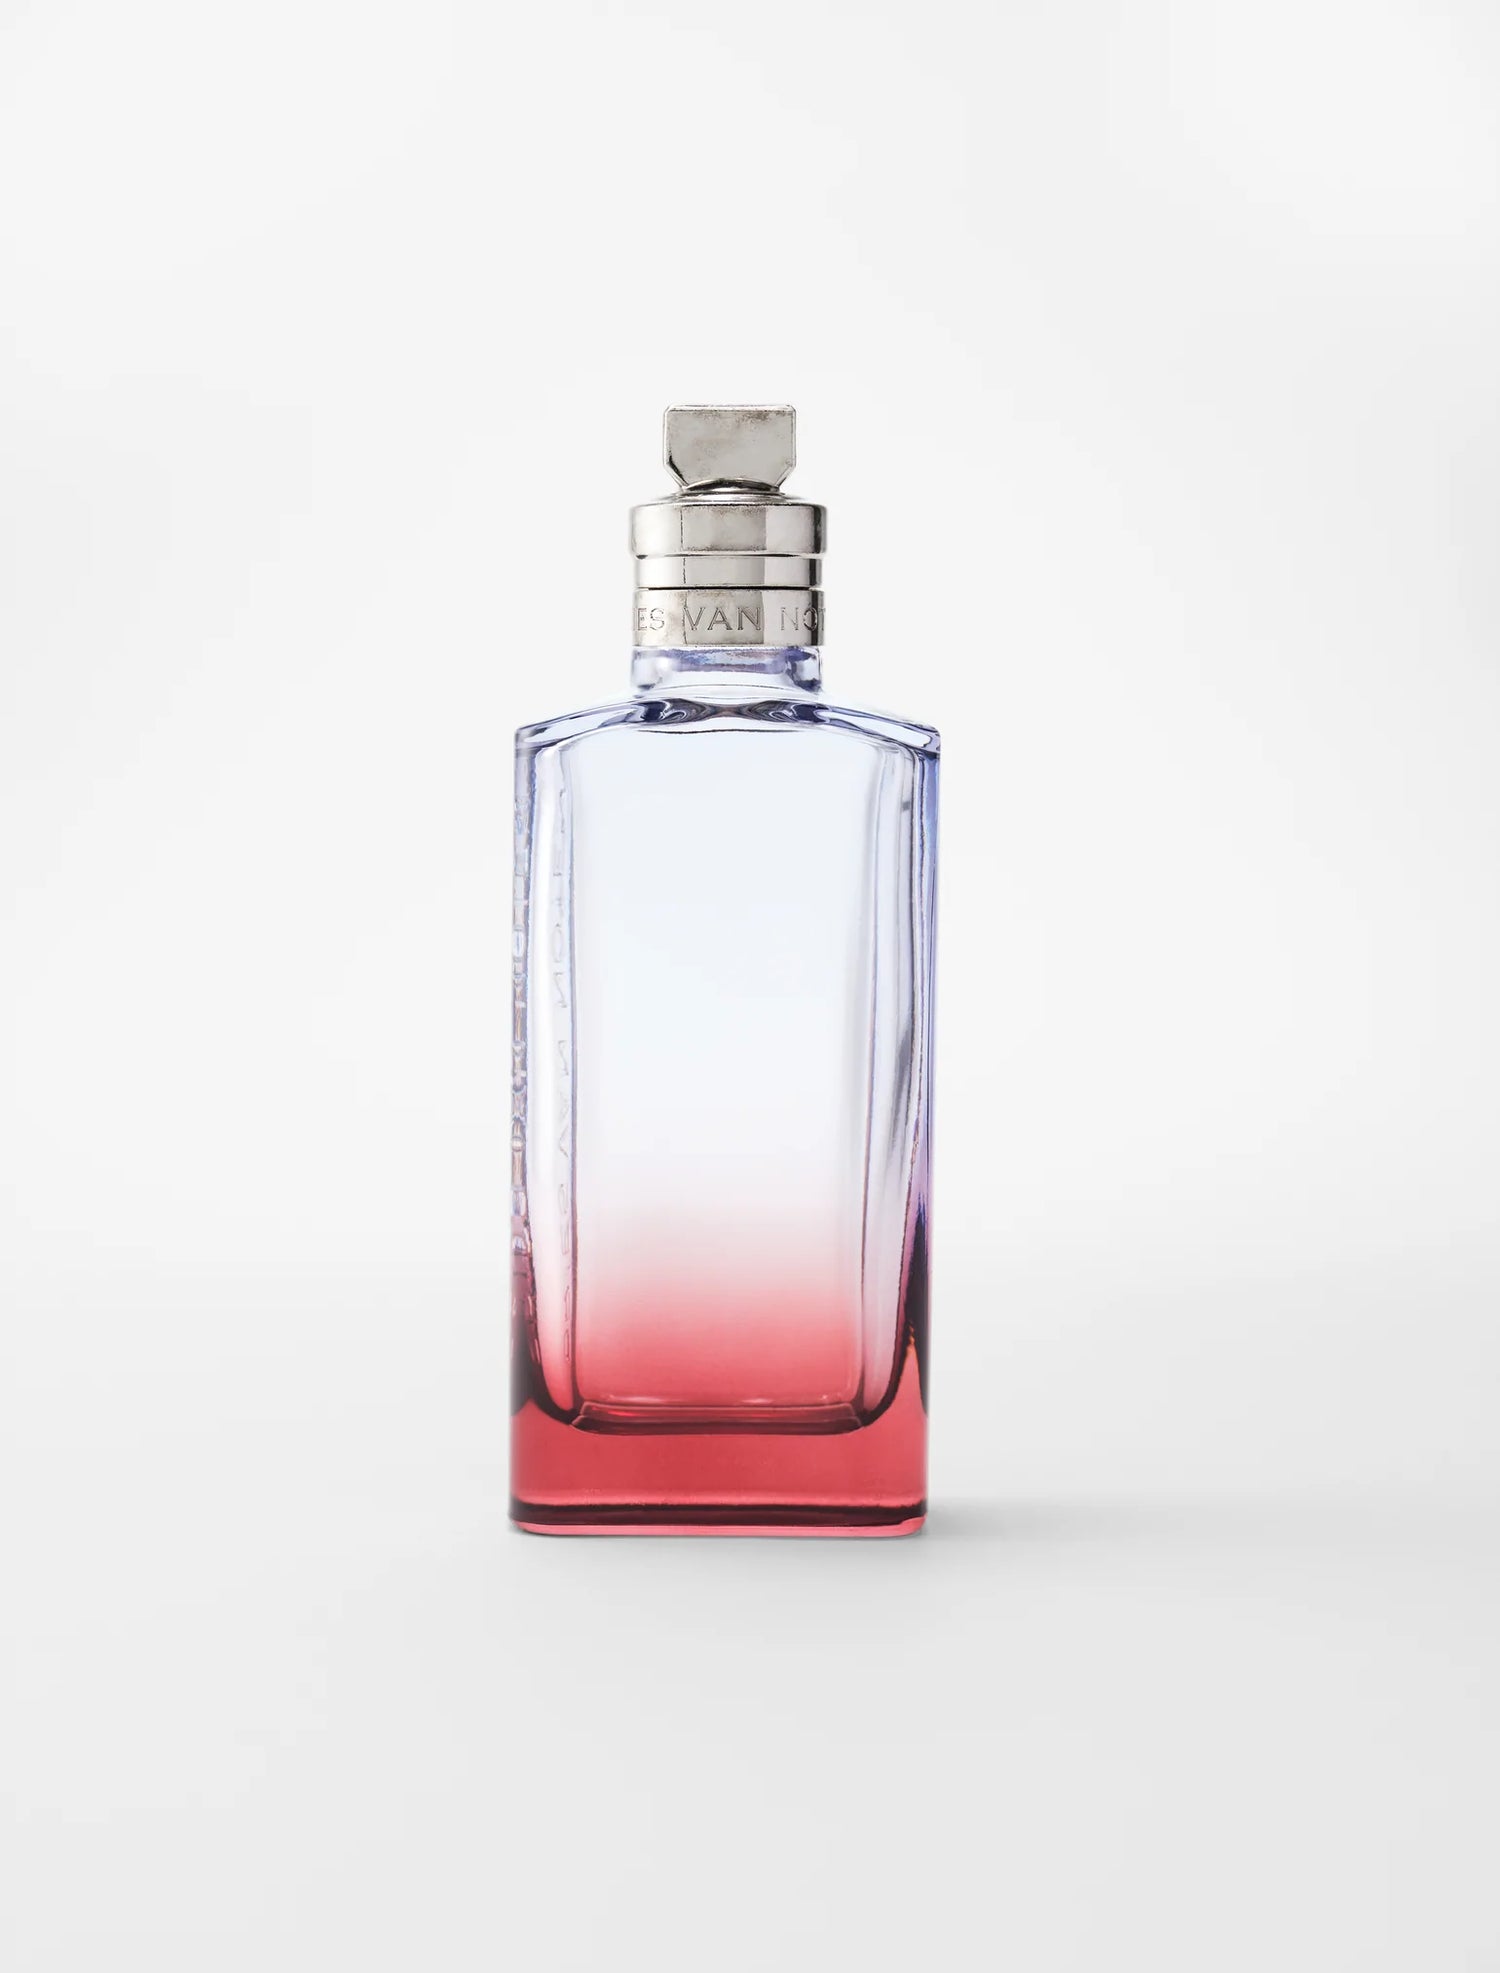 FLEUR DU MAL perfume by Dries Van Noten – Wikiparfum